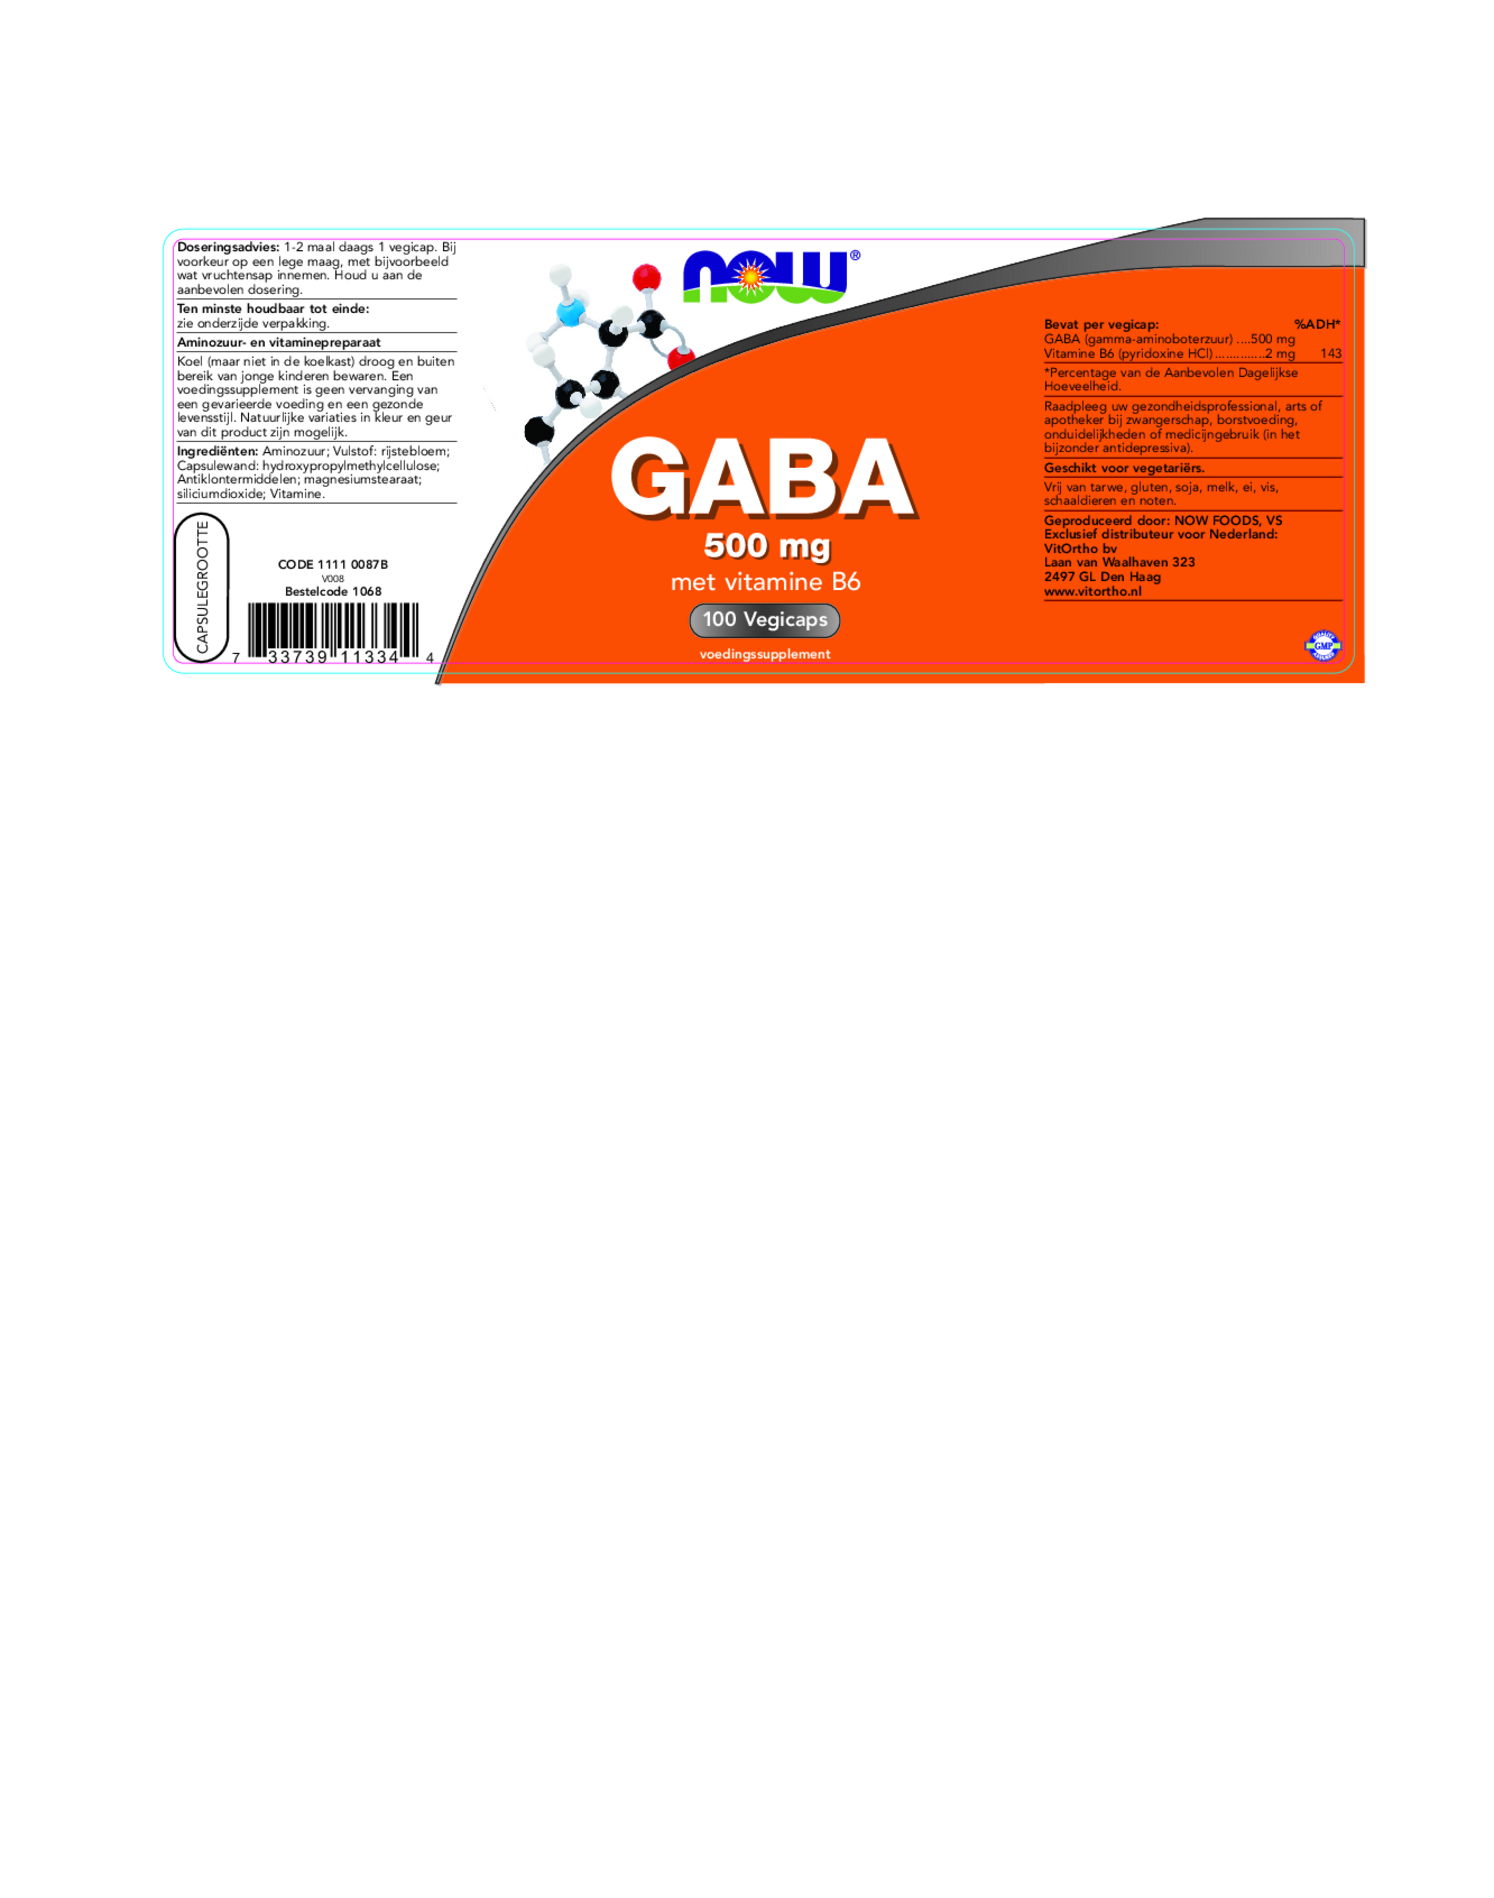 GABA 500mg Capsules afbeelding van document #1, etiket